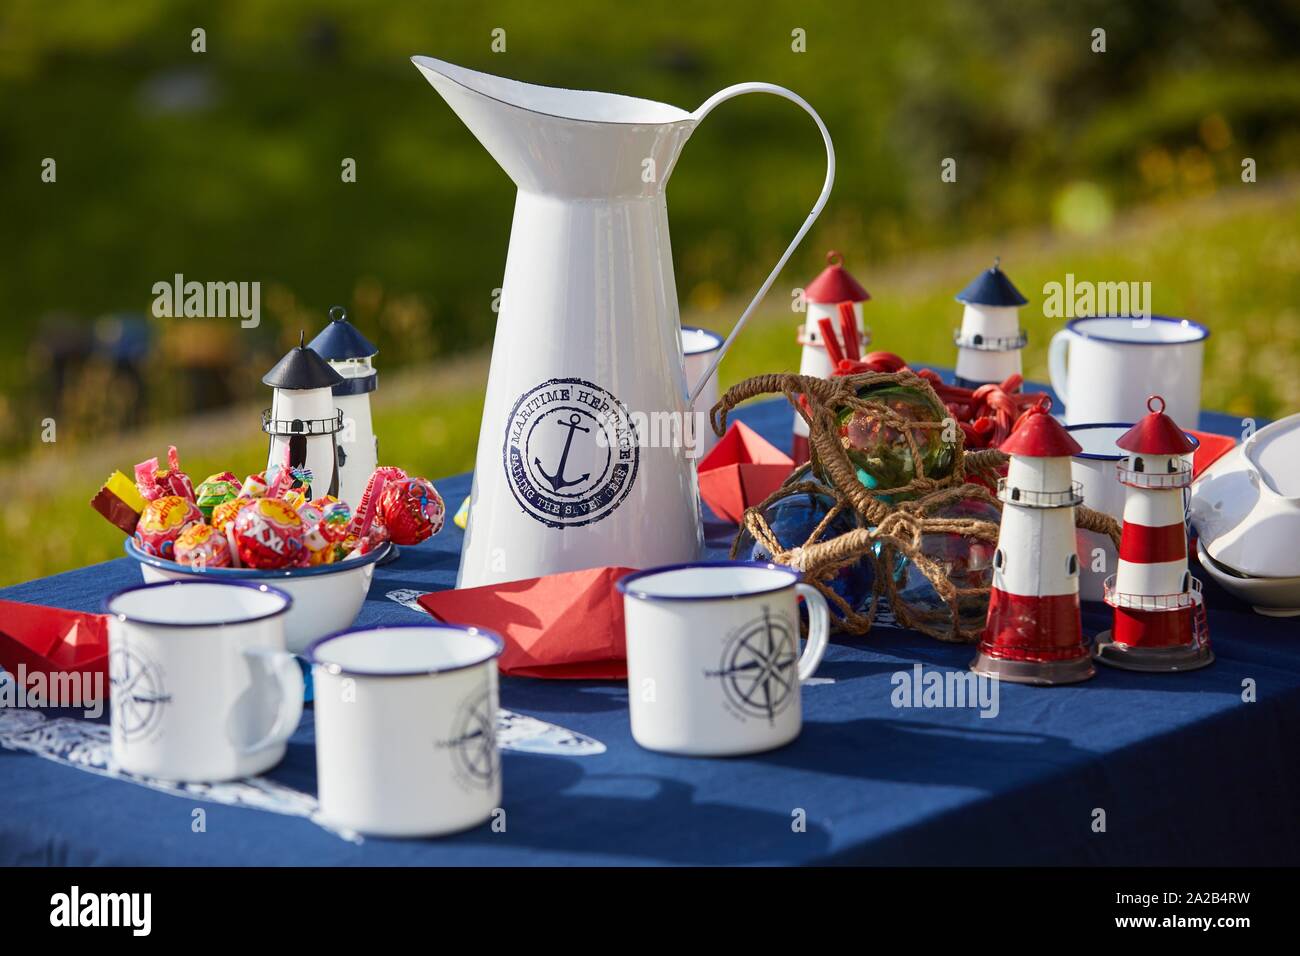 Tavolo con brocca e tazze, i dolci e i dettagli del marinaio Foto Stock